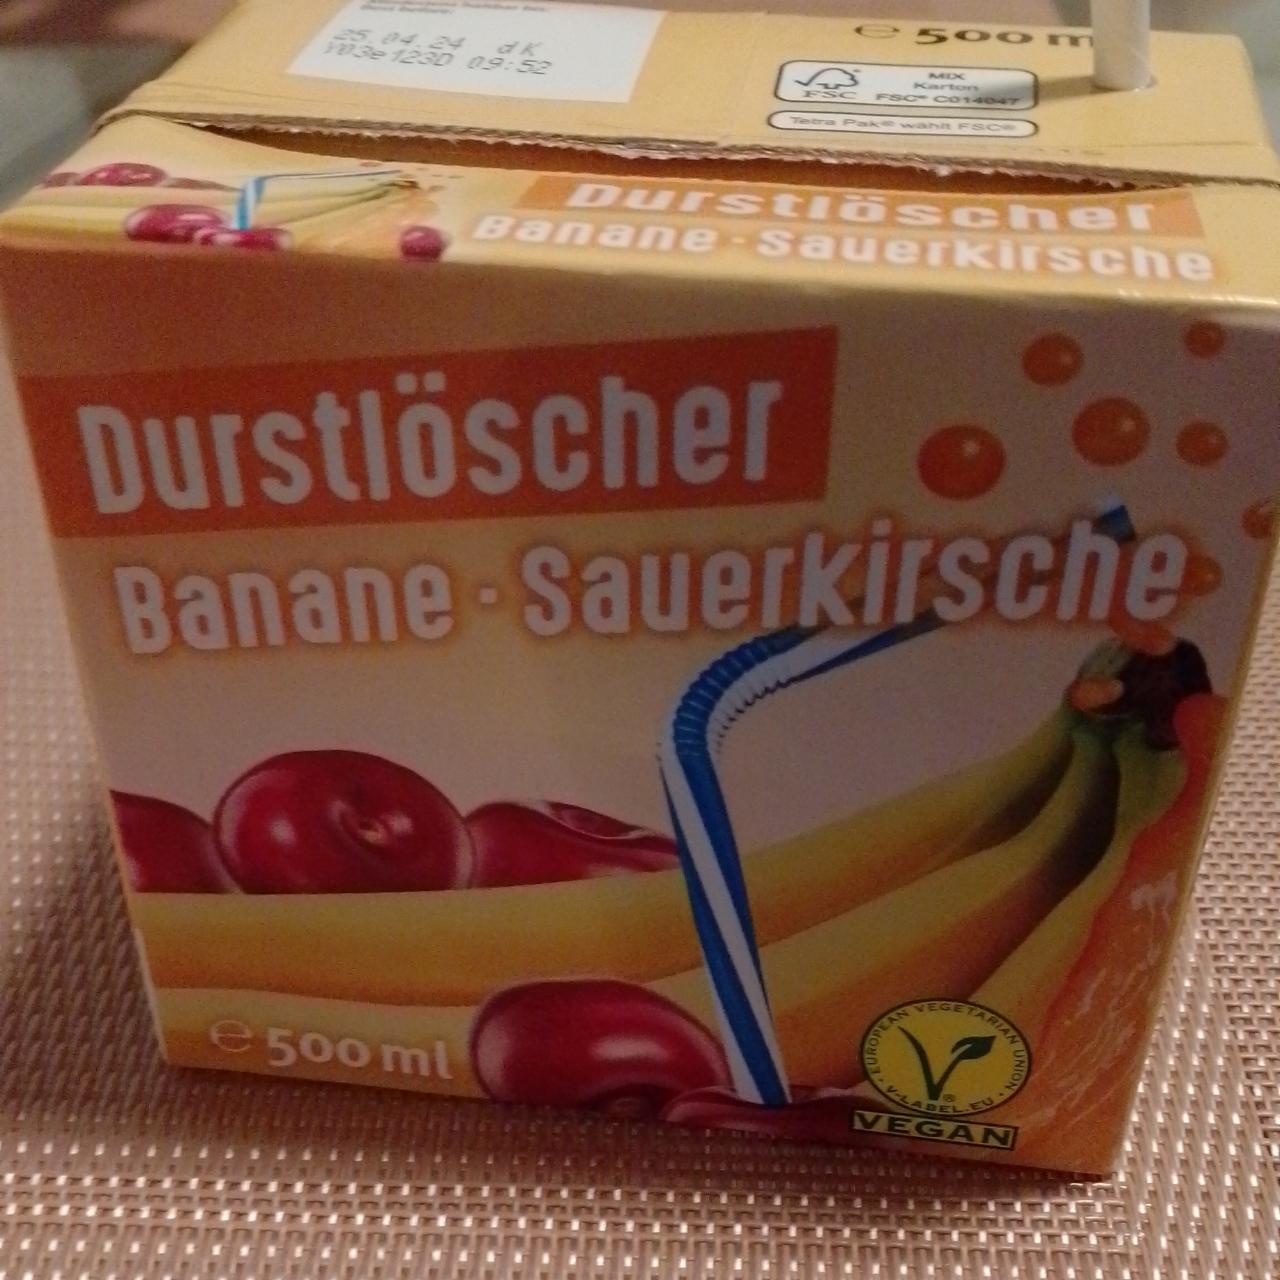 Фото - Banane-Sauerkirsche Durstlöscher